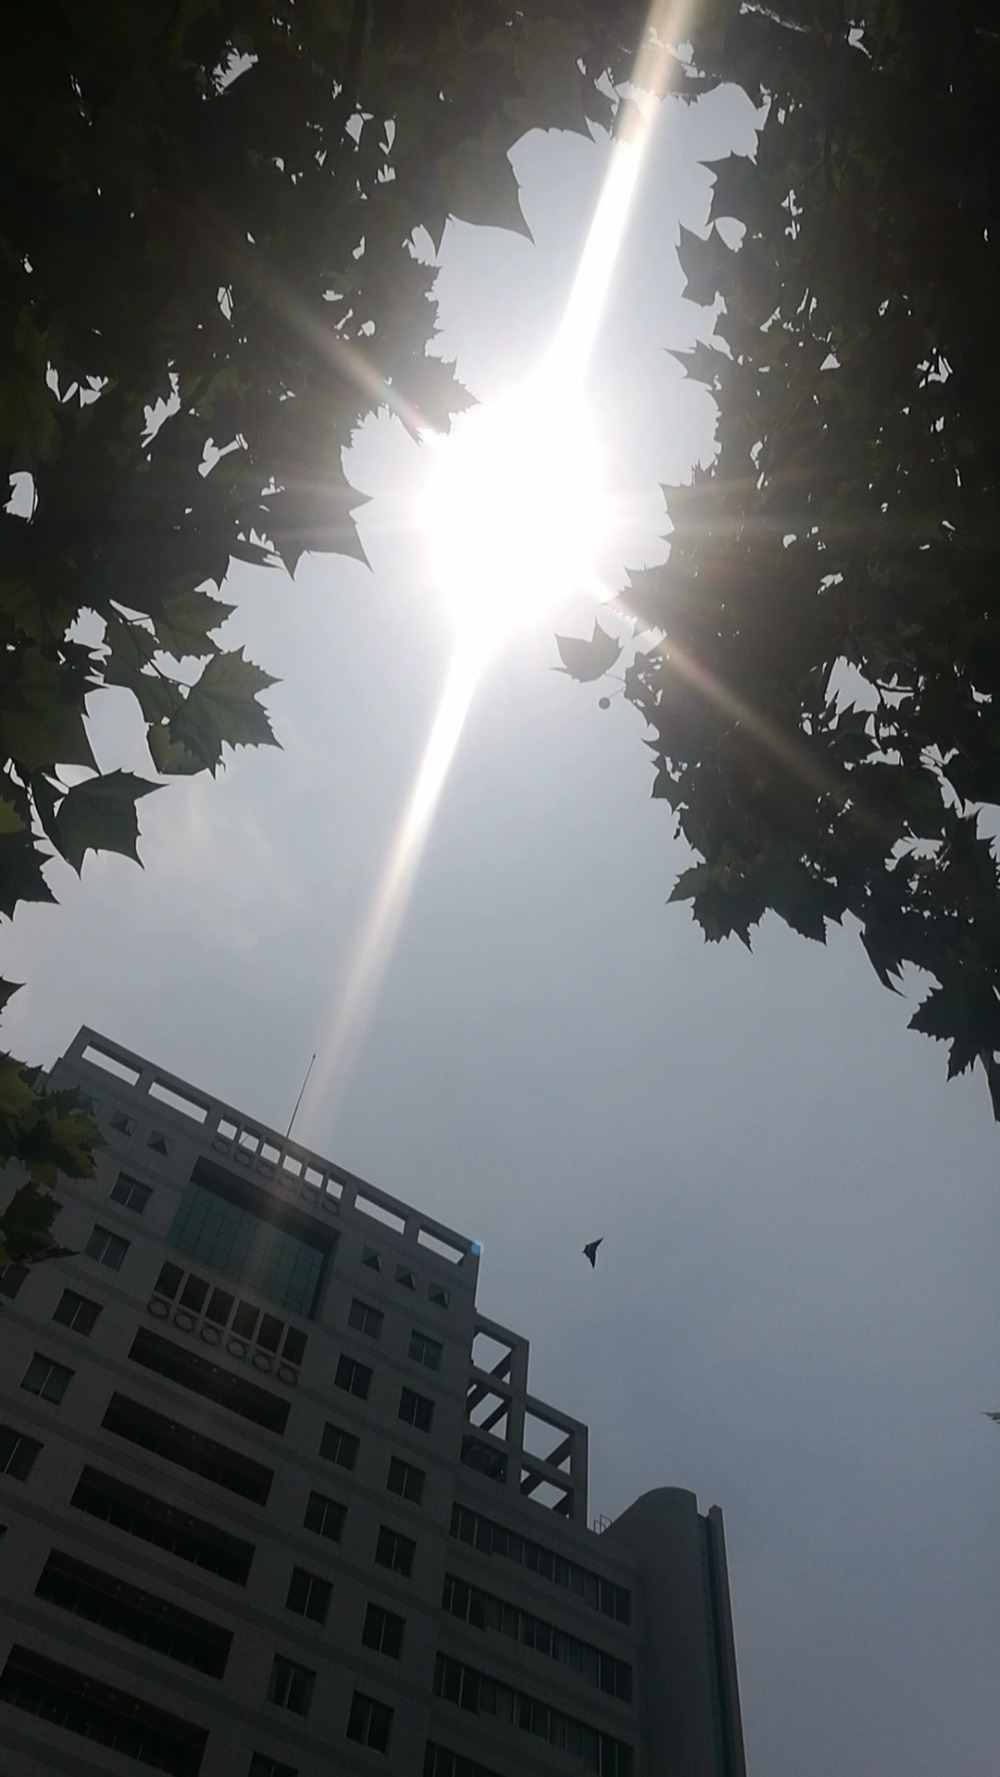 火辣的太阳当空照,晒晕圈儿了 ……坐标:郑州